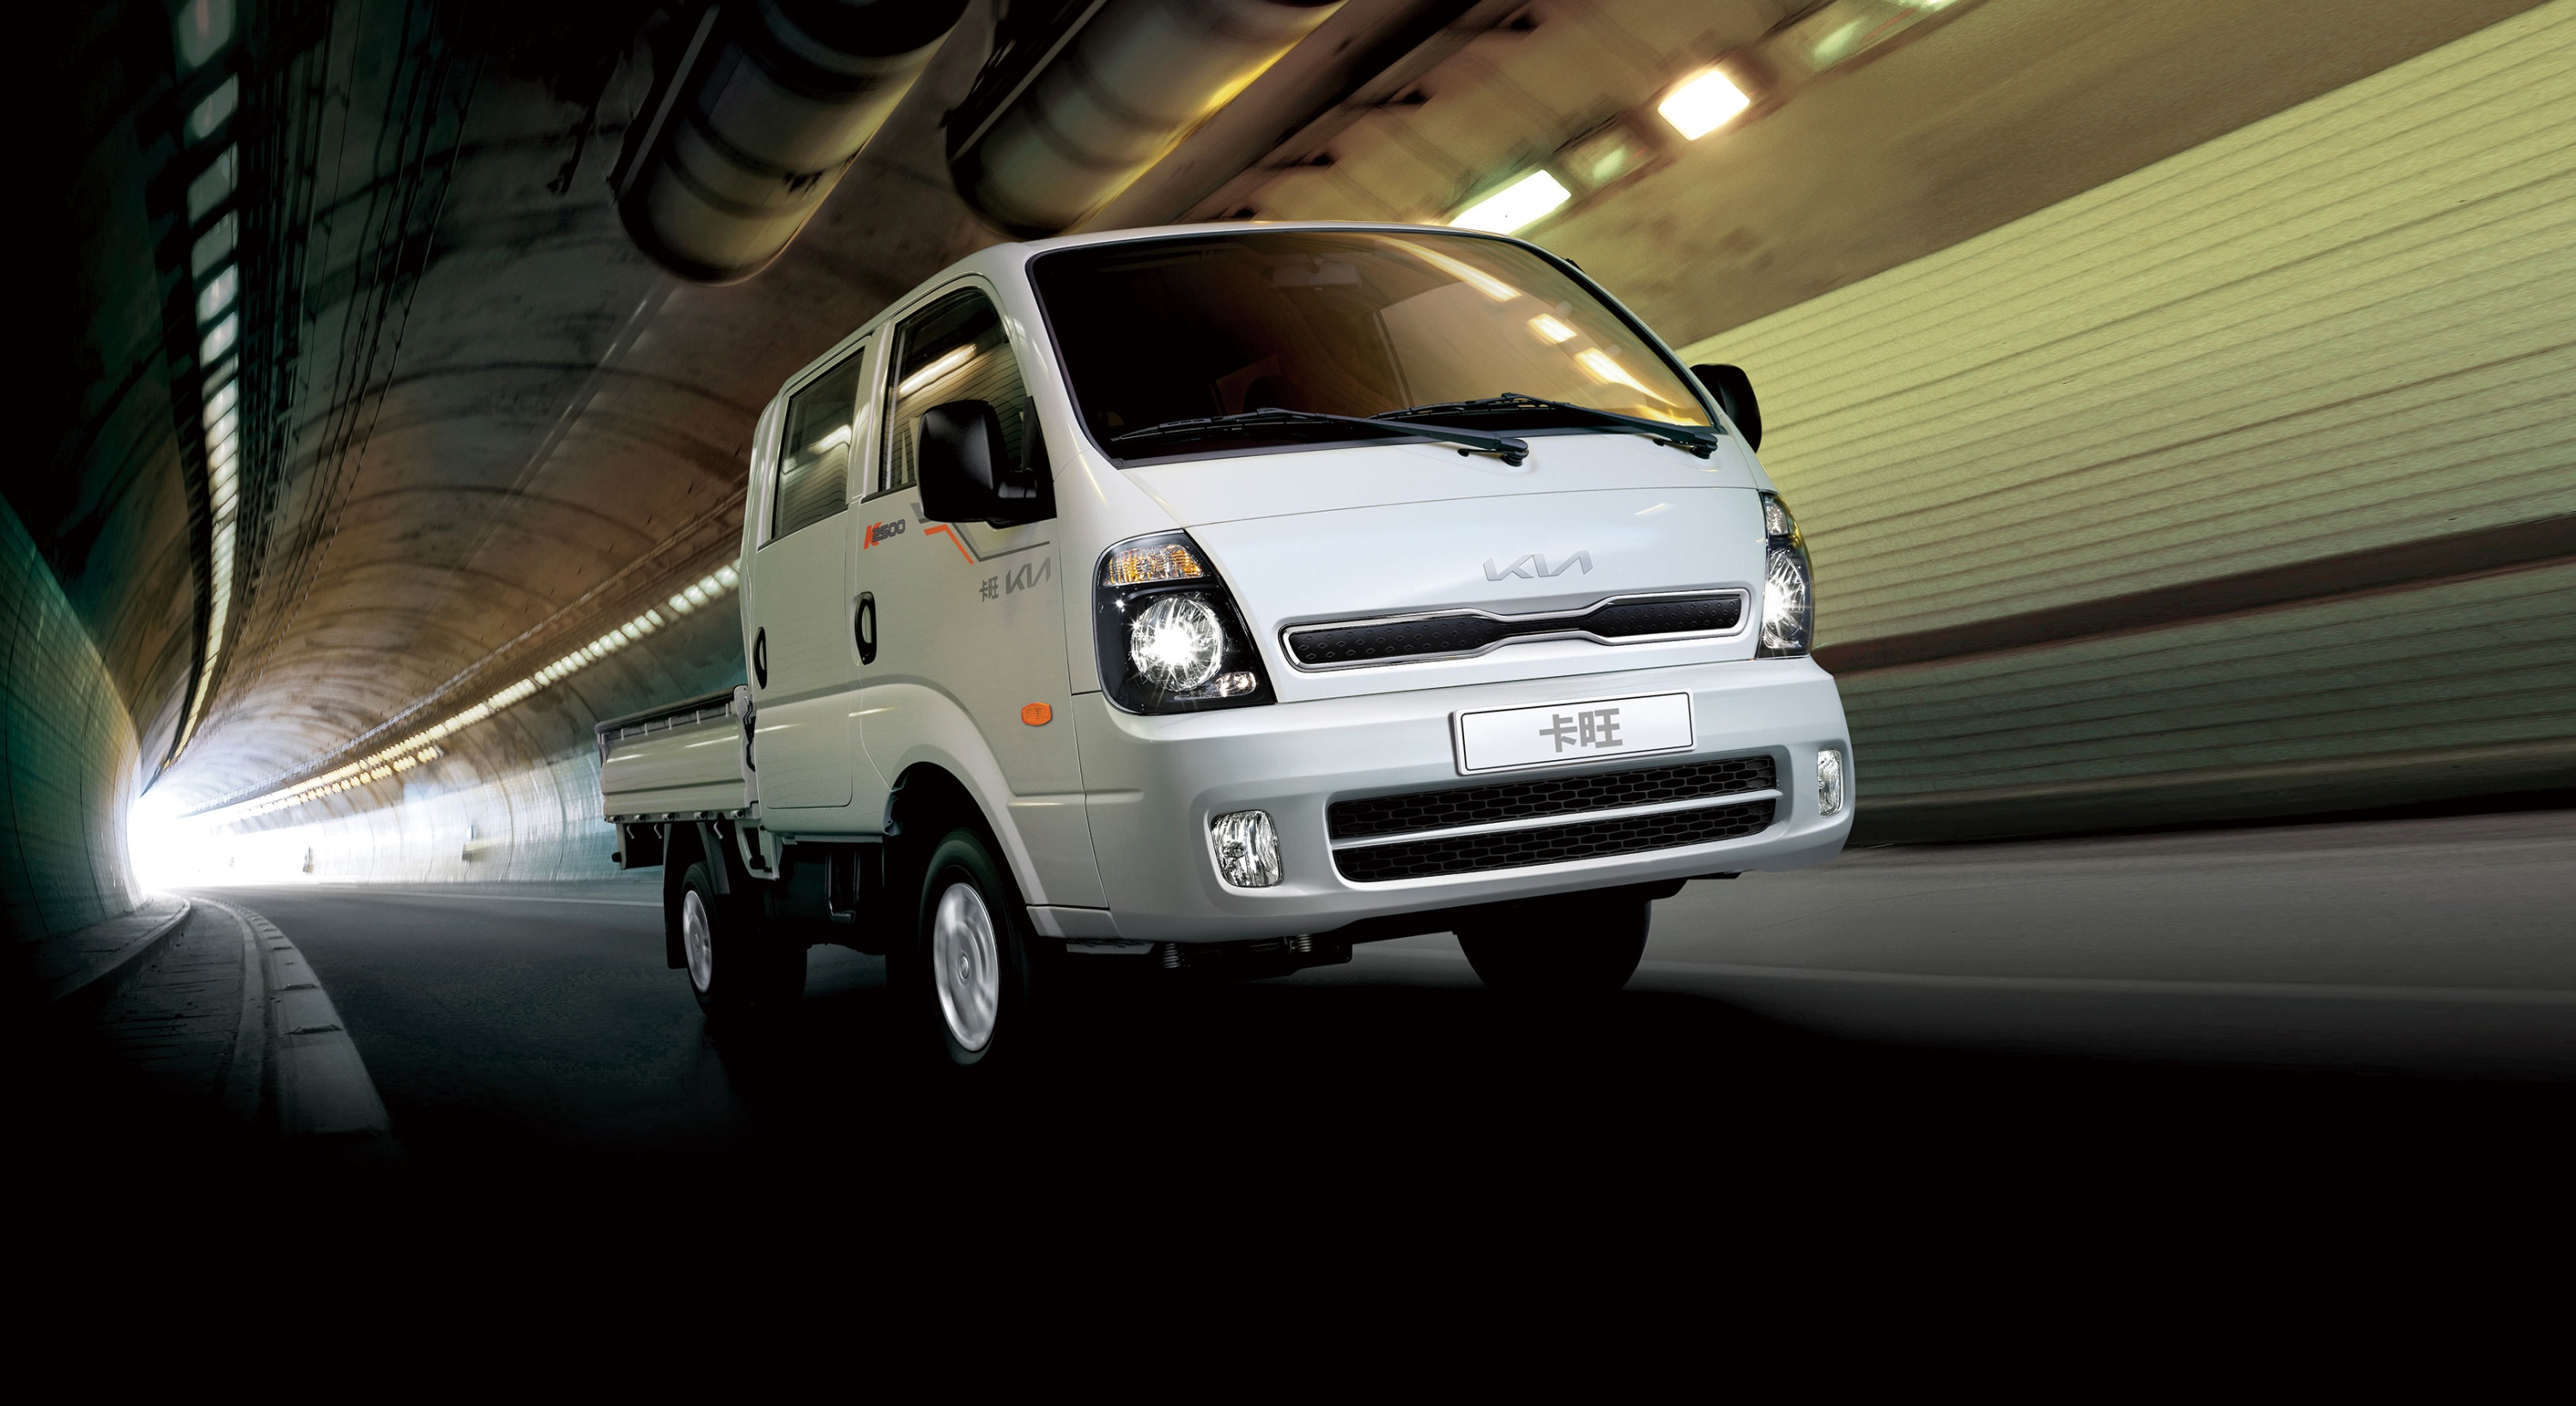 2. Kia商用車卡旺K2500以多元車型選擇、 強大承載能力、完善主被動安全配備滿足各行各業頭家需求。.jpg